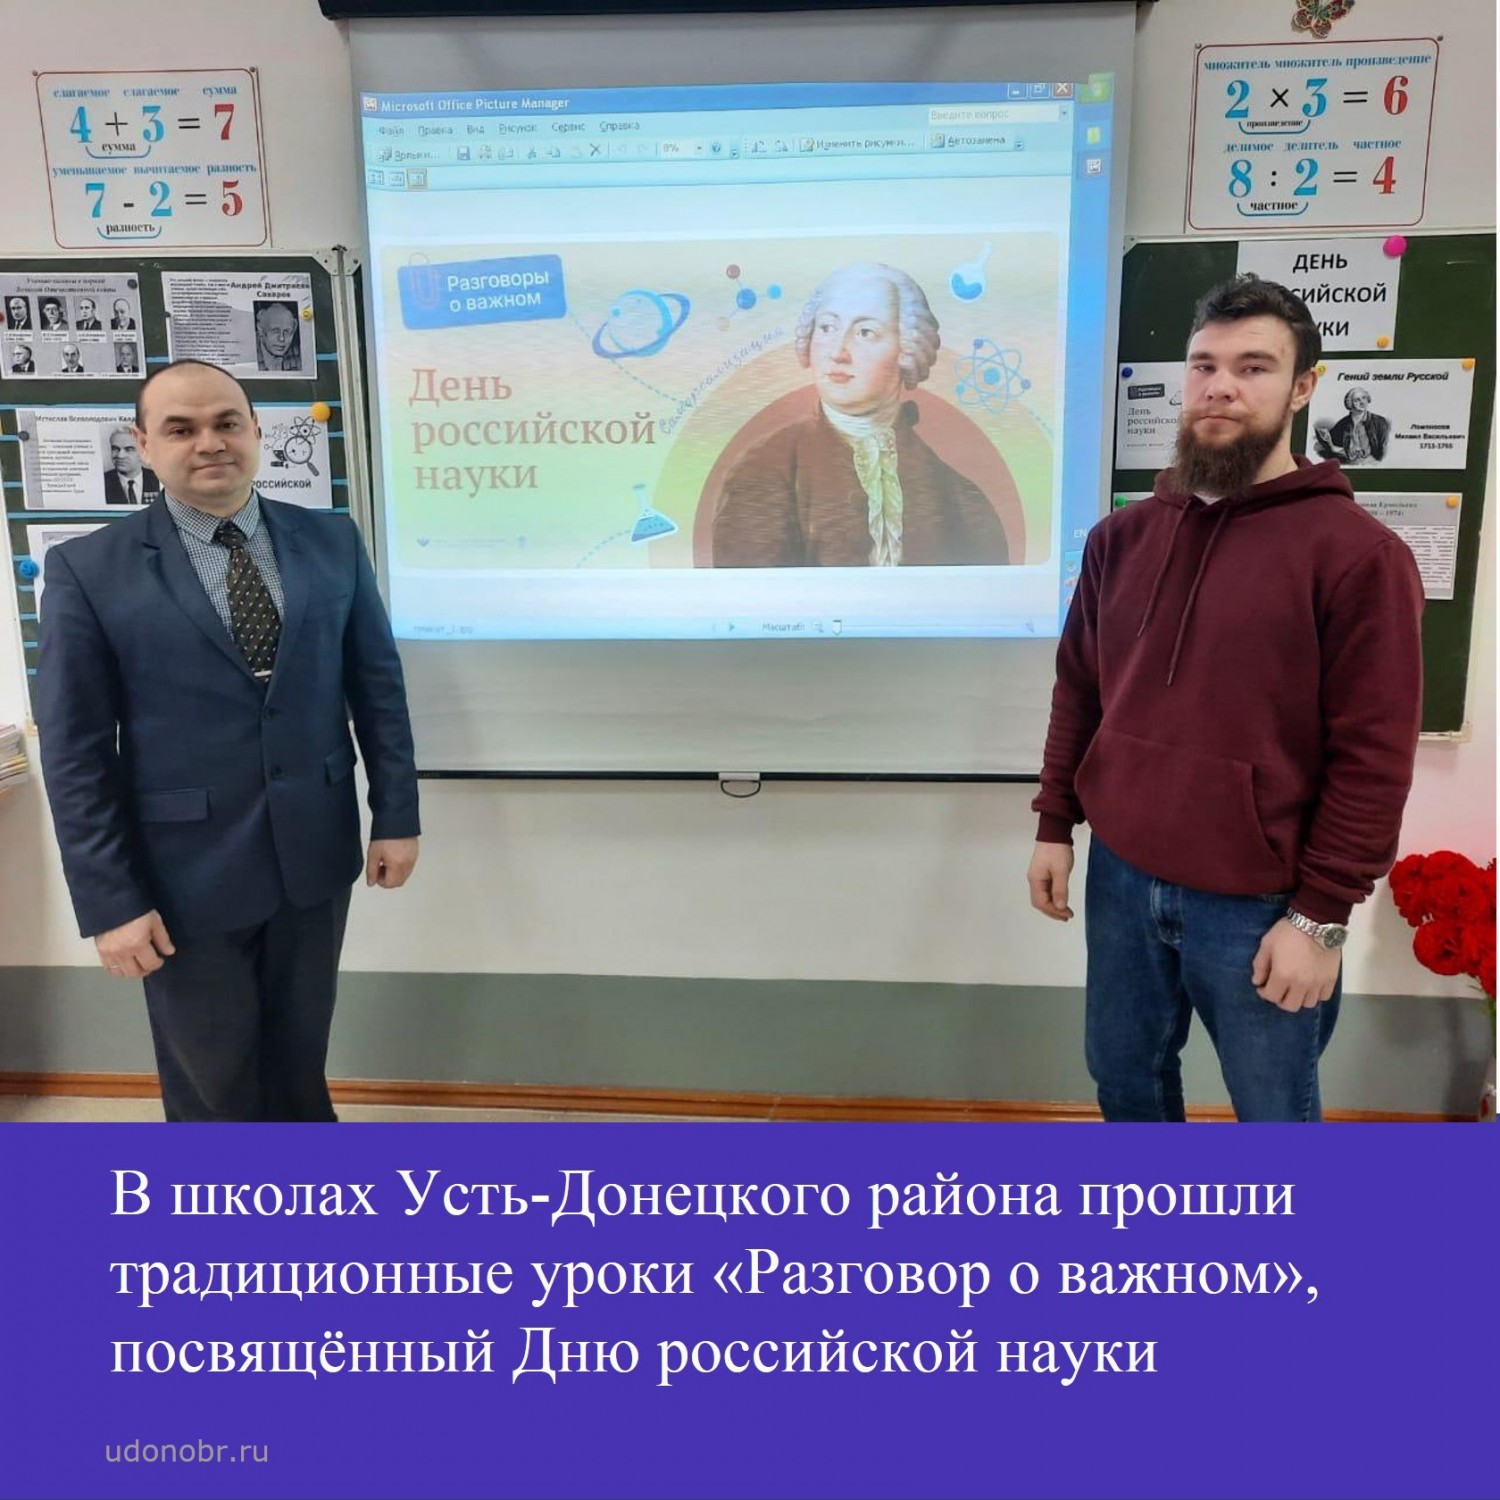 В школах Усть-Донецкого района прошли традиционные занятия «Разговор о важном», посвященный Дню российской науке